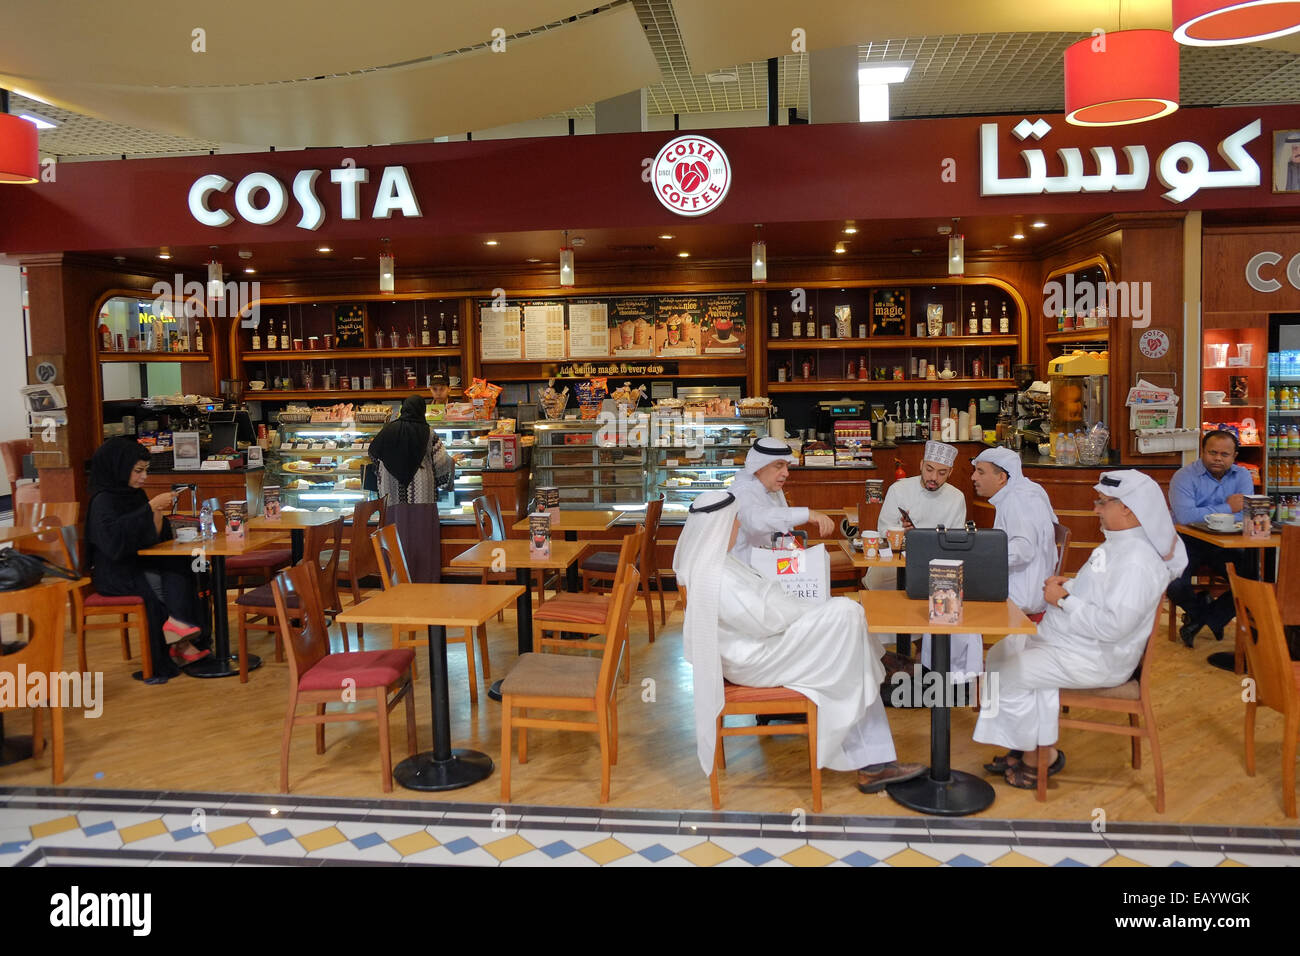 Avente uno snack a livello internazionale la catena di caffè Costa prima di salire a bordo del volo. Alla sala partenze dell'Aeroporto Internazionale di Bahrain. Il Bahrein ha una popolazione di oltre il 55% degli immigrati e aveva un'elezione generale in questo giorno. Foto Stock